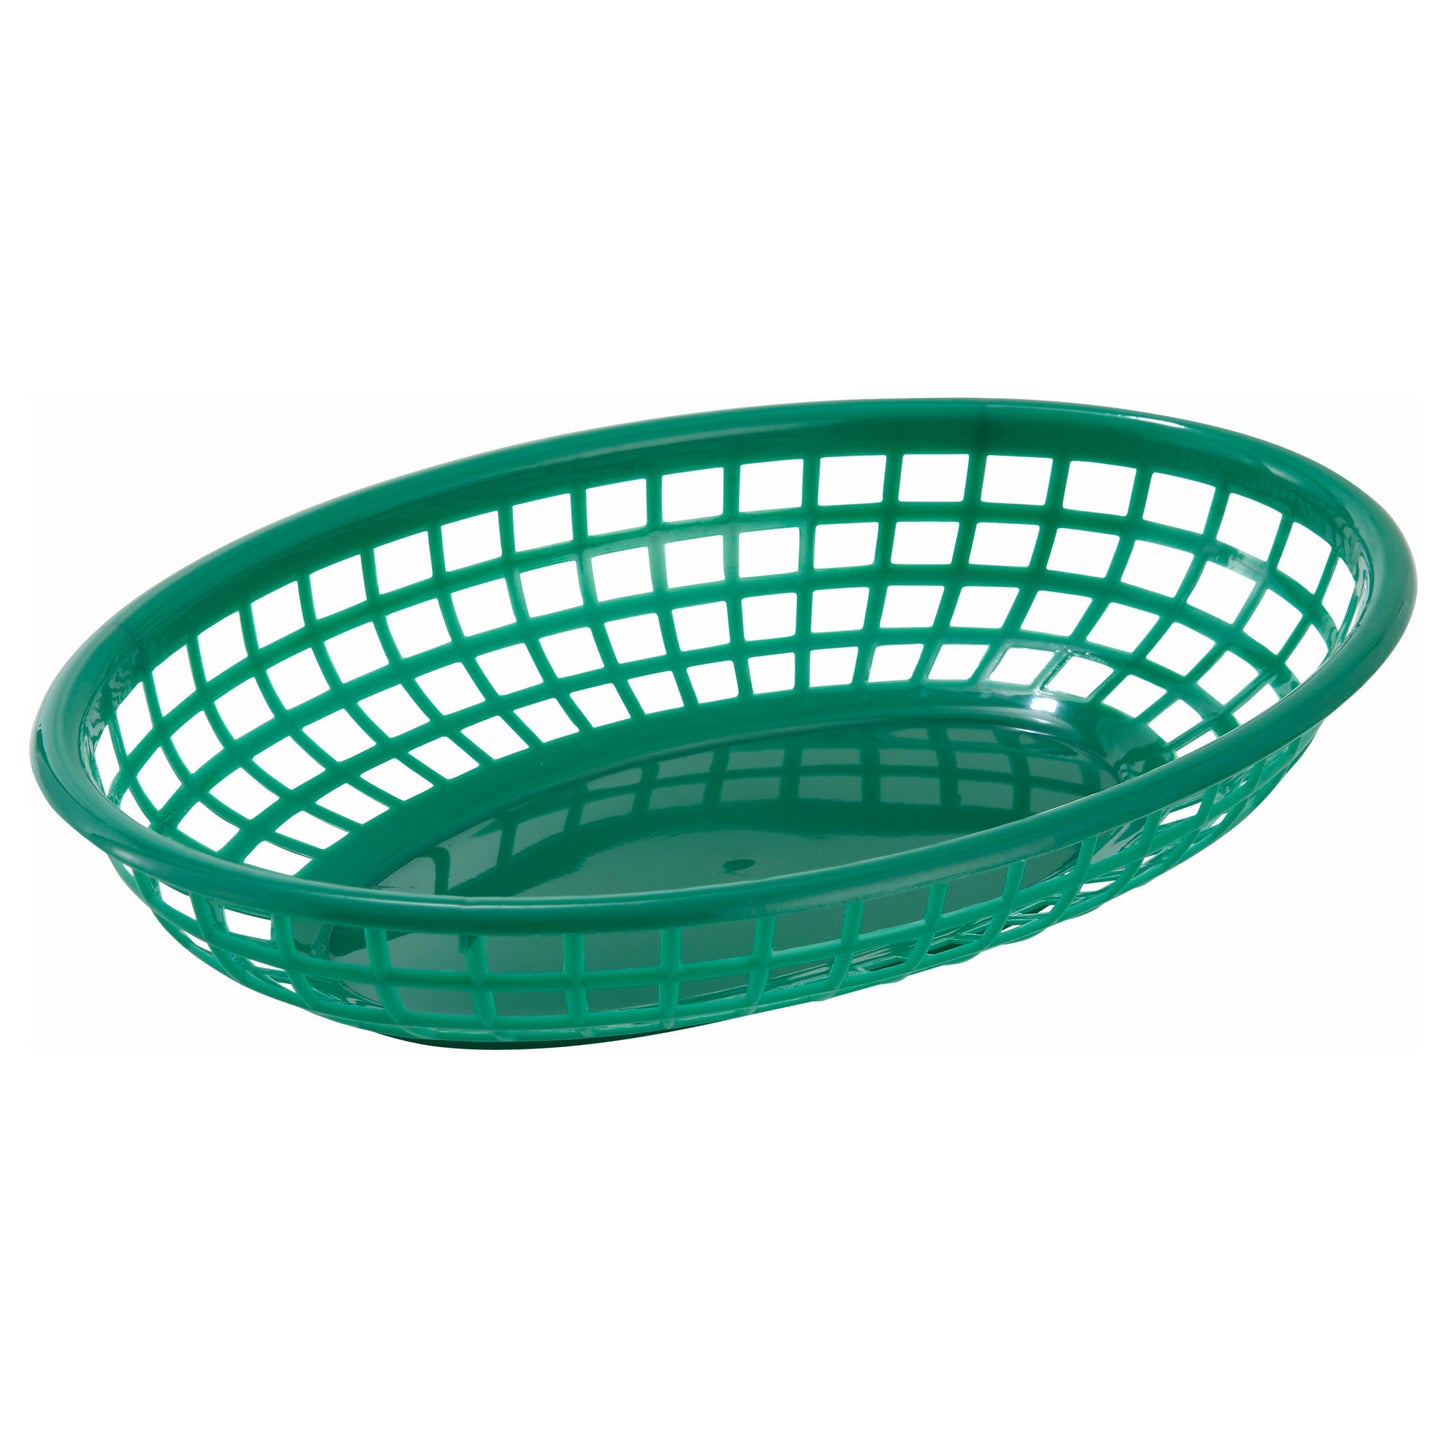 PFB-10G - Oval Fast Food Basket, 9-1/2" x 5" x 2" - Green